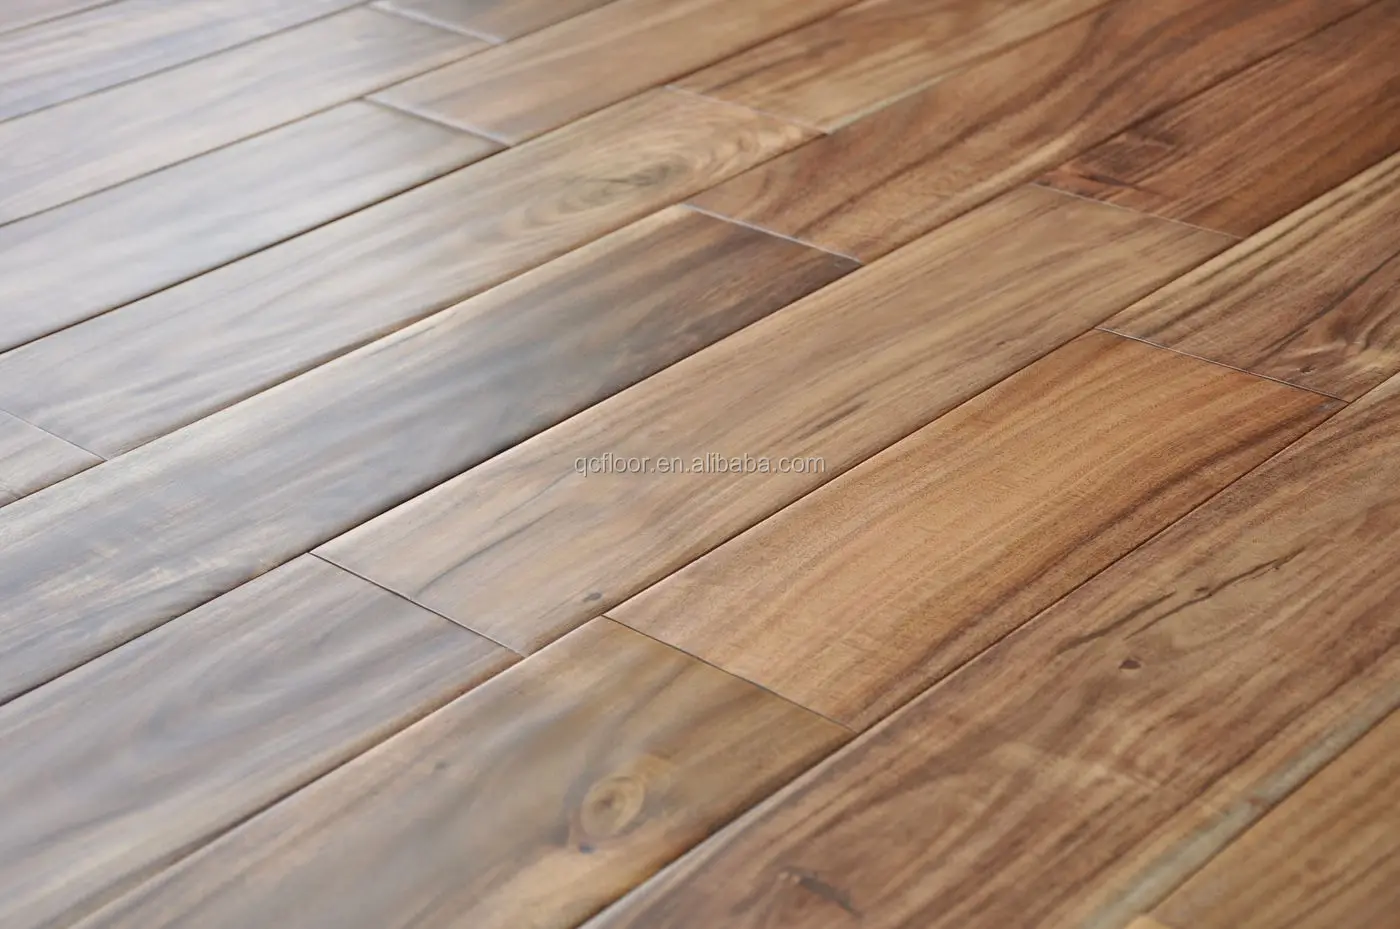 18mm Solid Acacia Flooring Hot Sale In Usa Hardwood Flooring